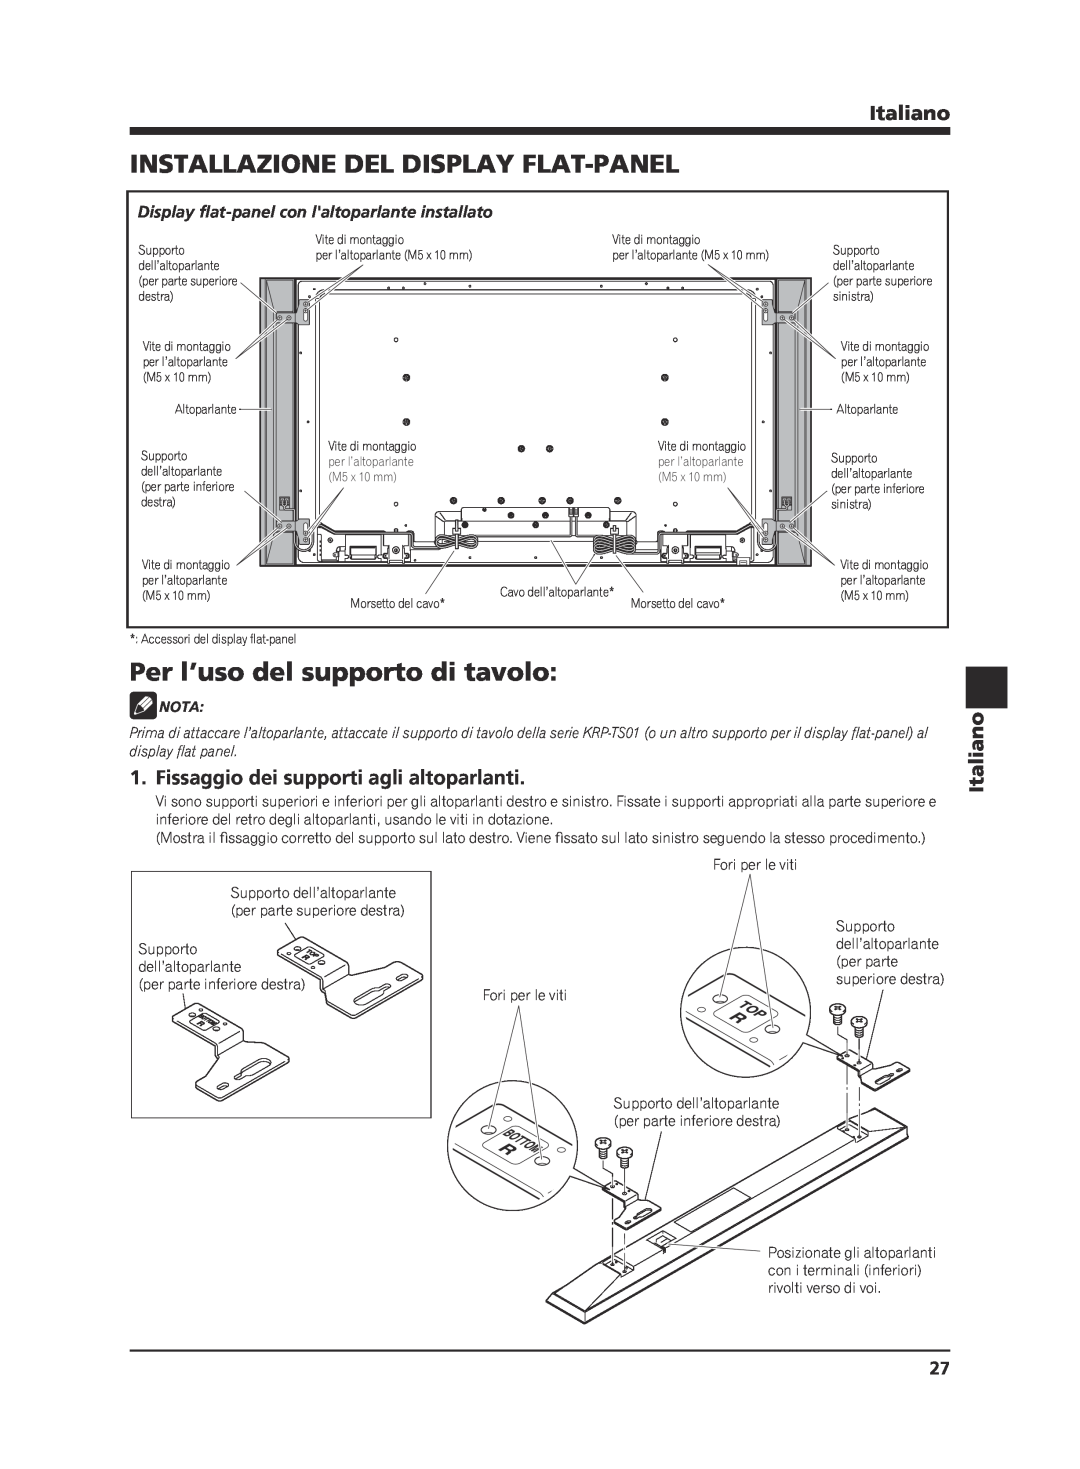 Pioneer KRP-S02 manual Installazione Del Display Flat-Panel, Per l’uso del supporto di tavolo, Italiano, Nota 